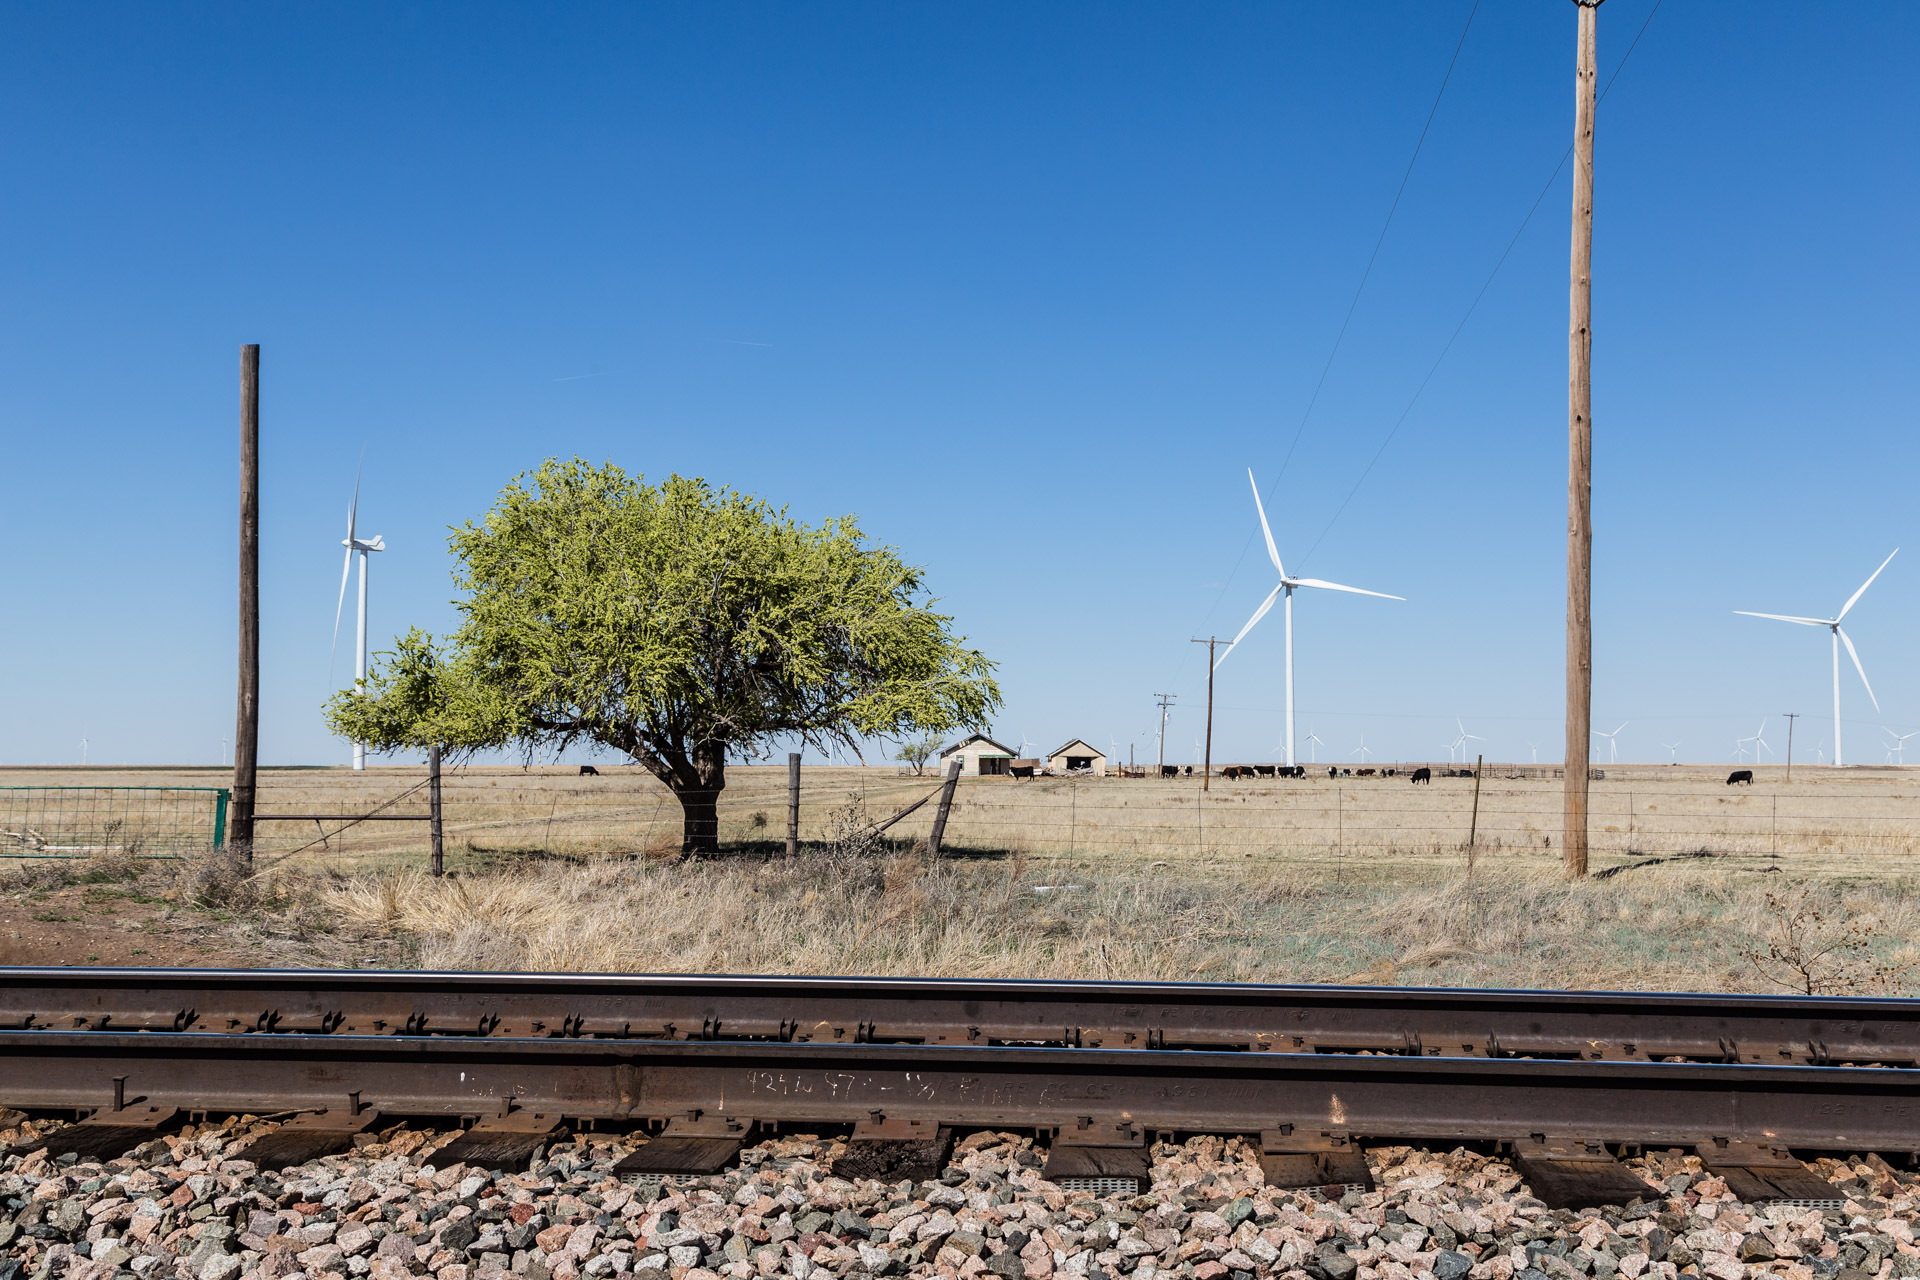 Railroad Tracks and Wind Turbines (mid tracks)